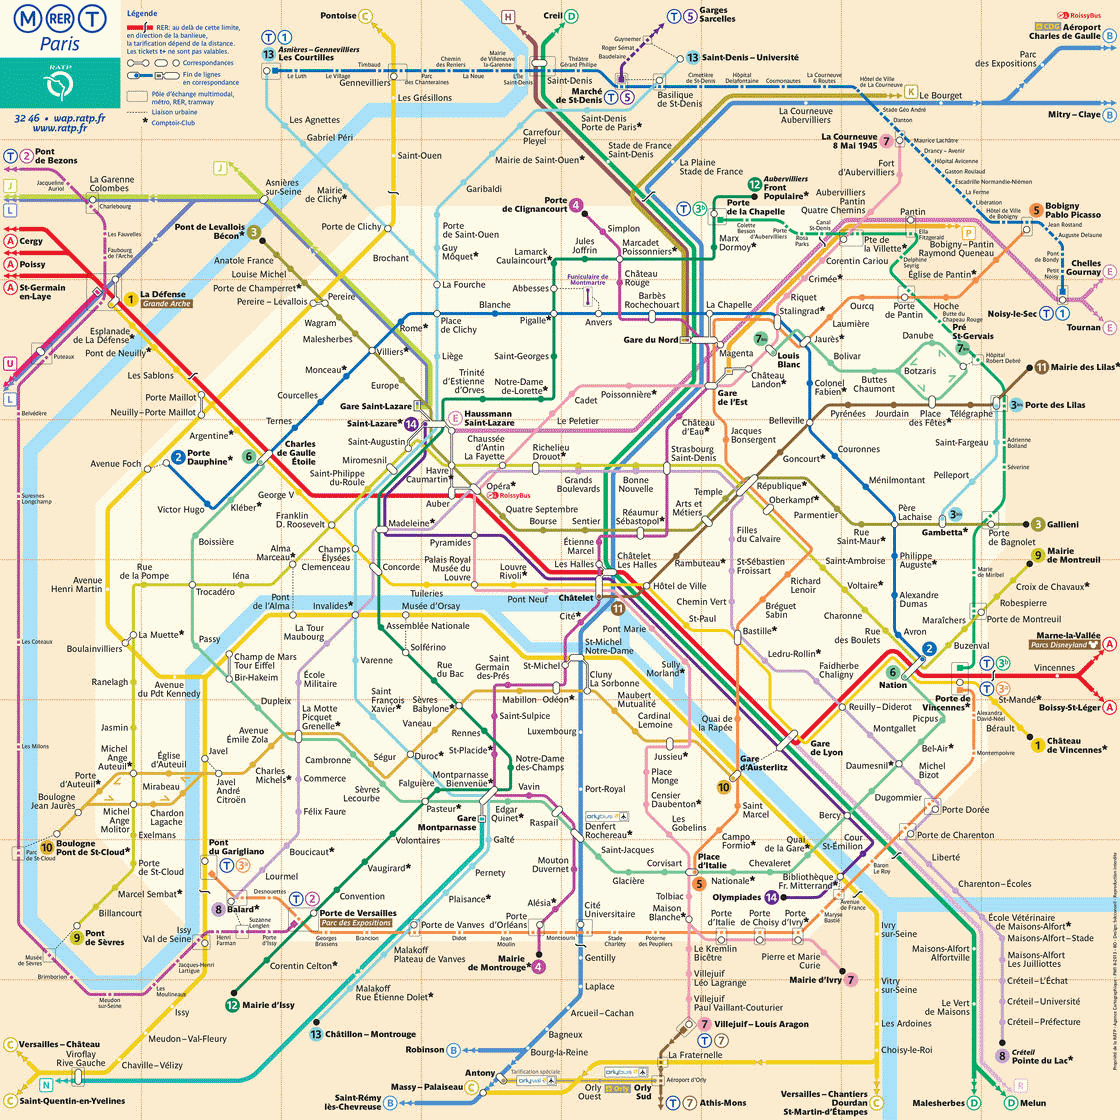 google-image-plan-metro-paris